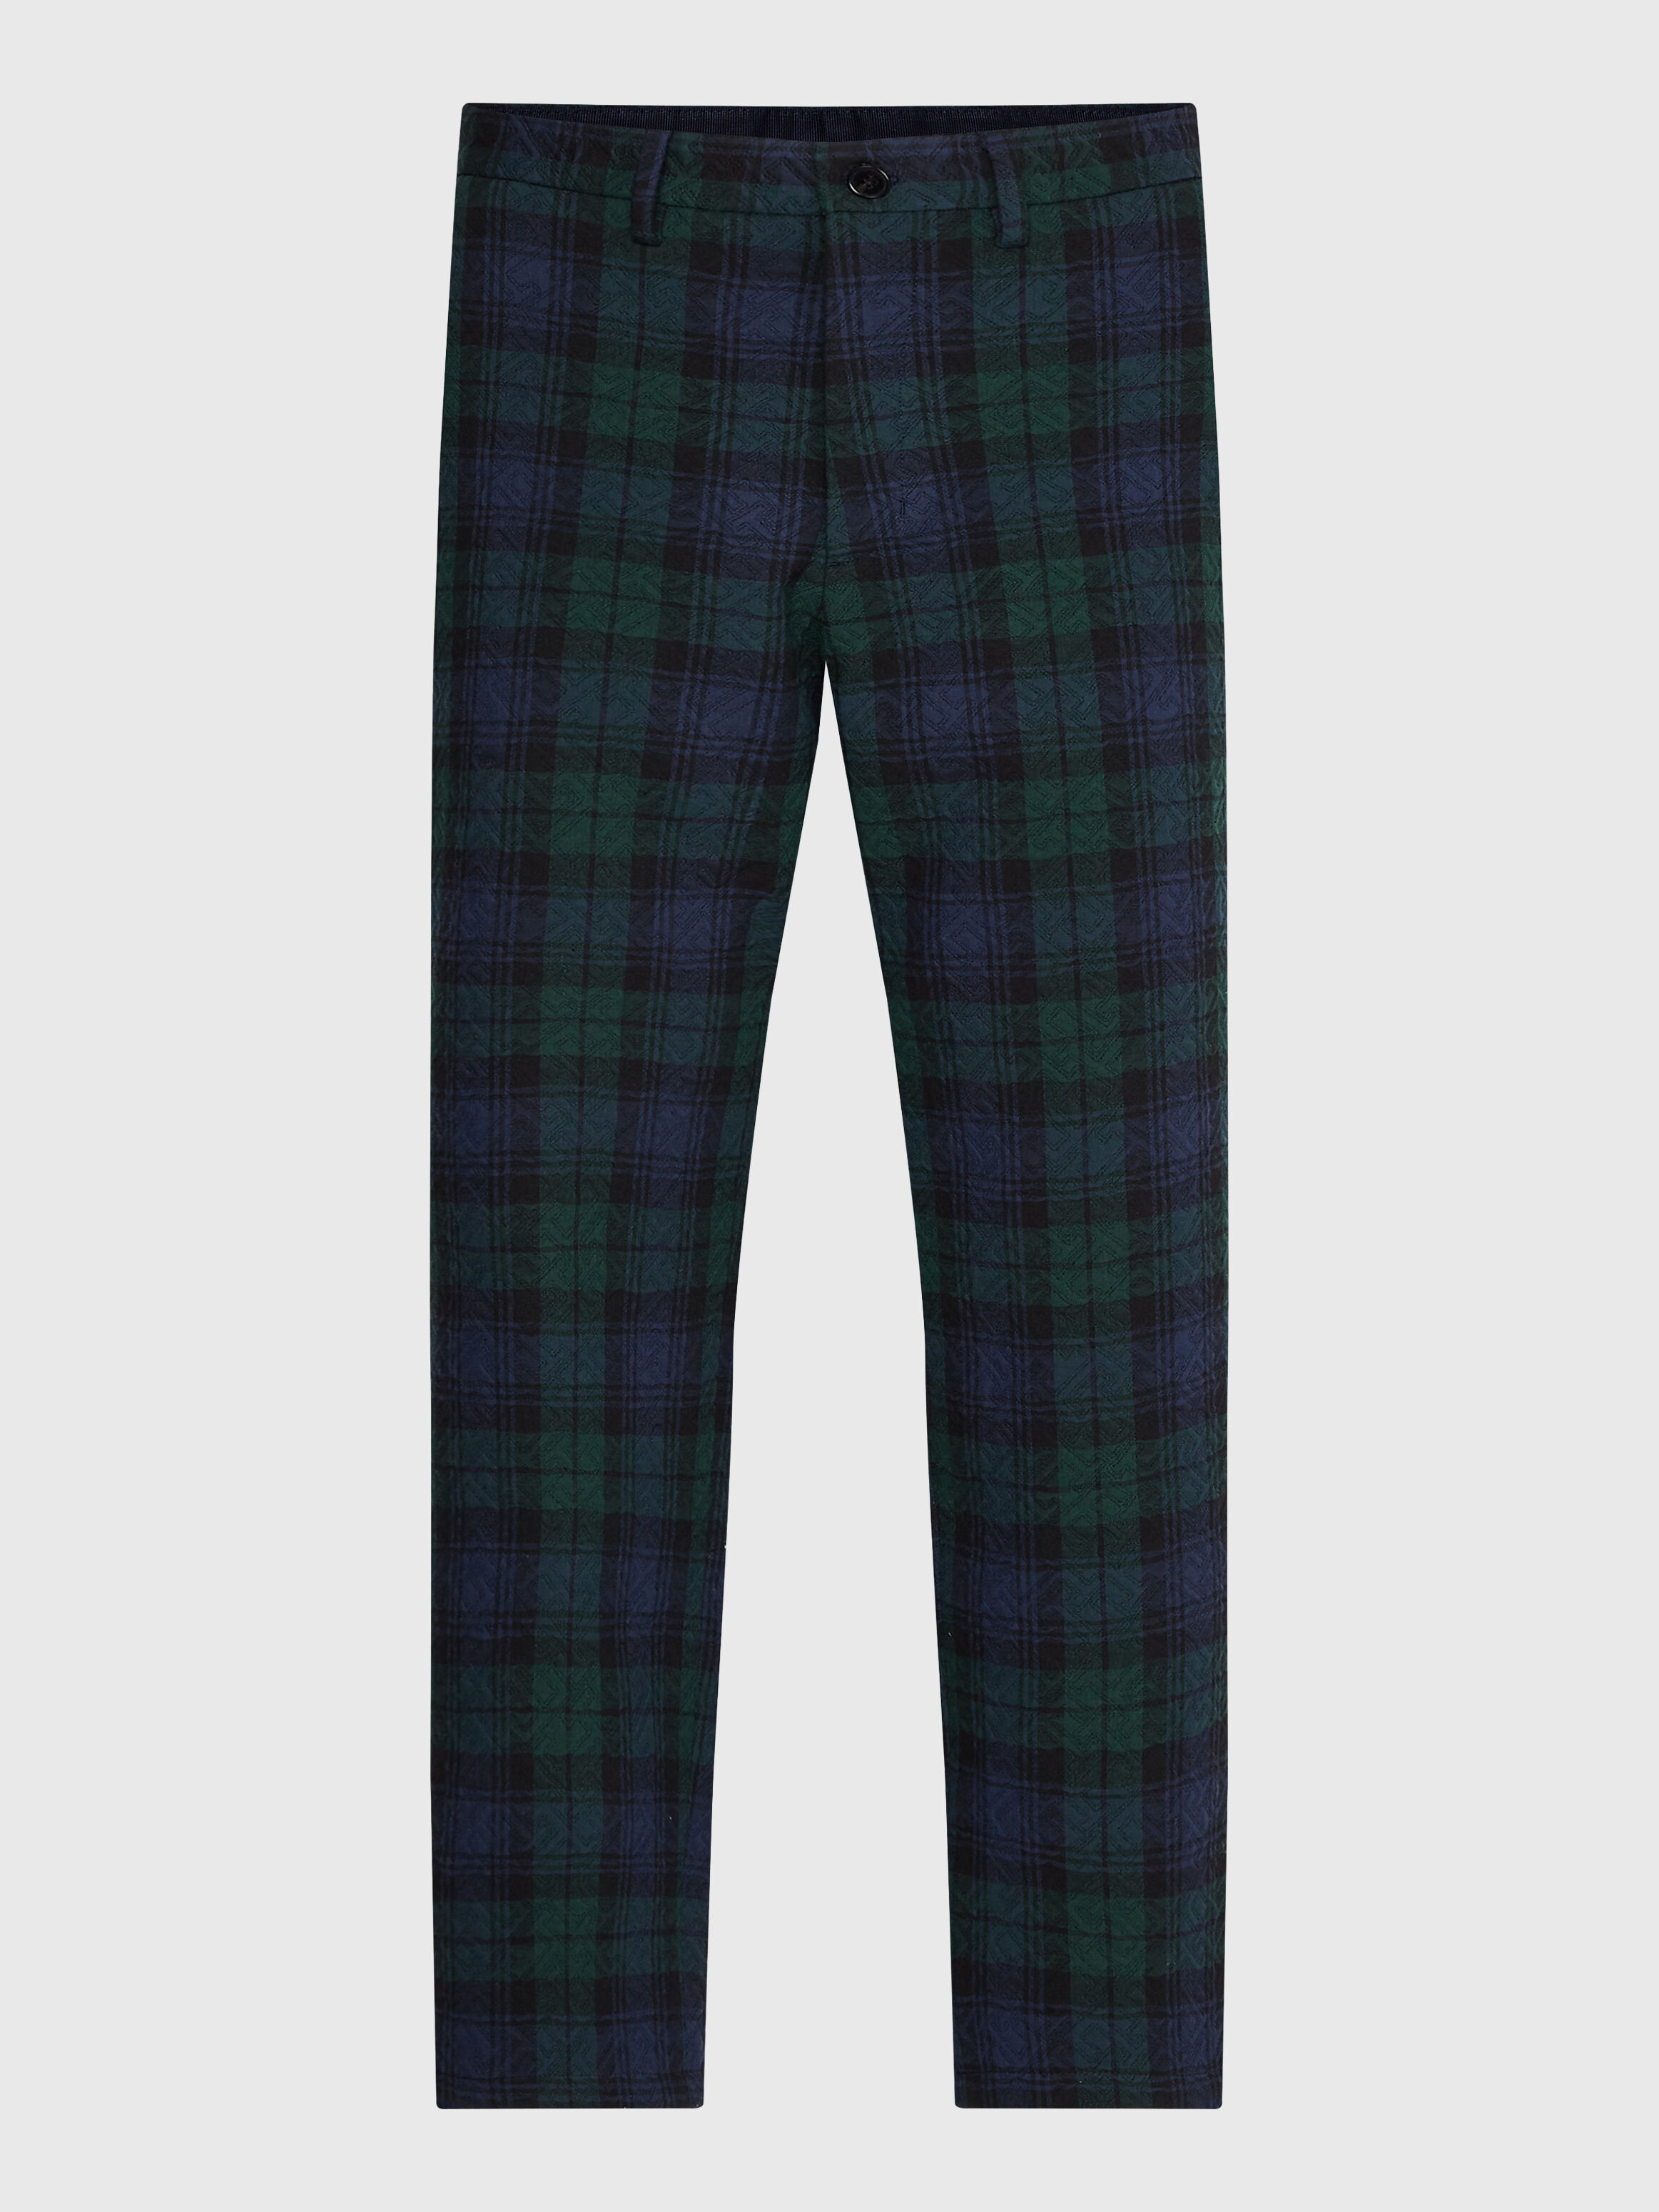 Scottish Tartan Plaid 'Black Watch' Tux Trousers - Acustom Apparel